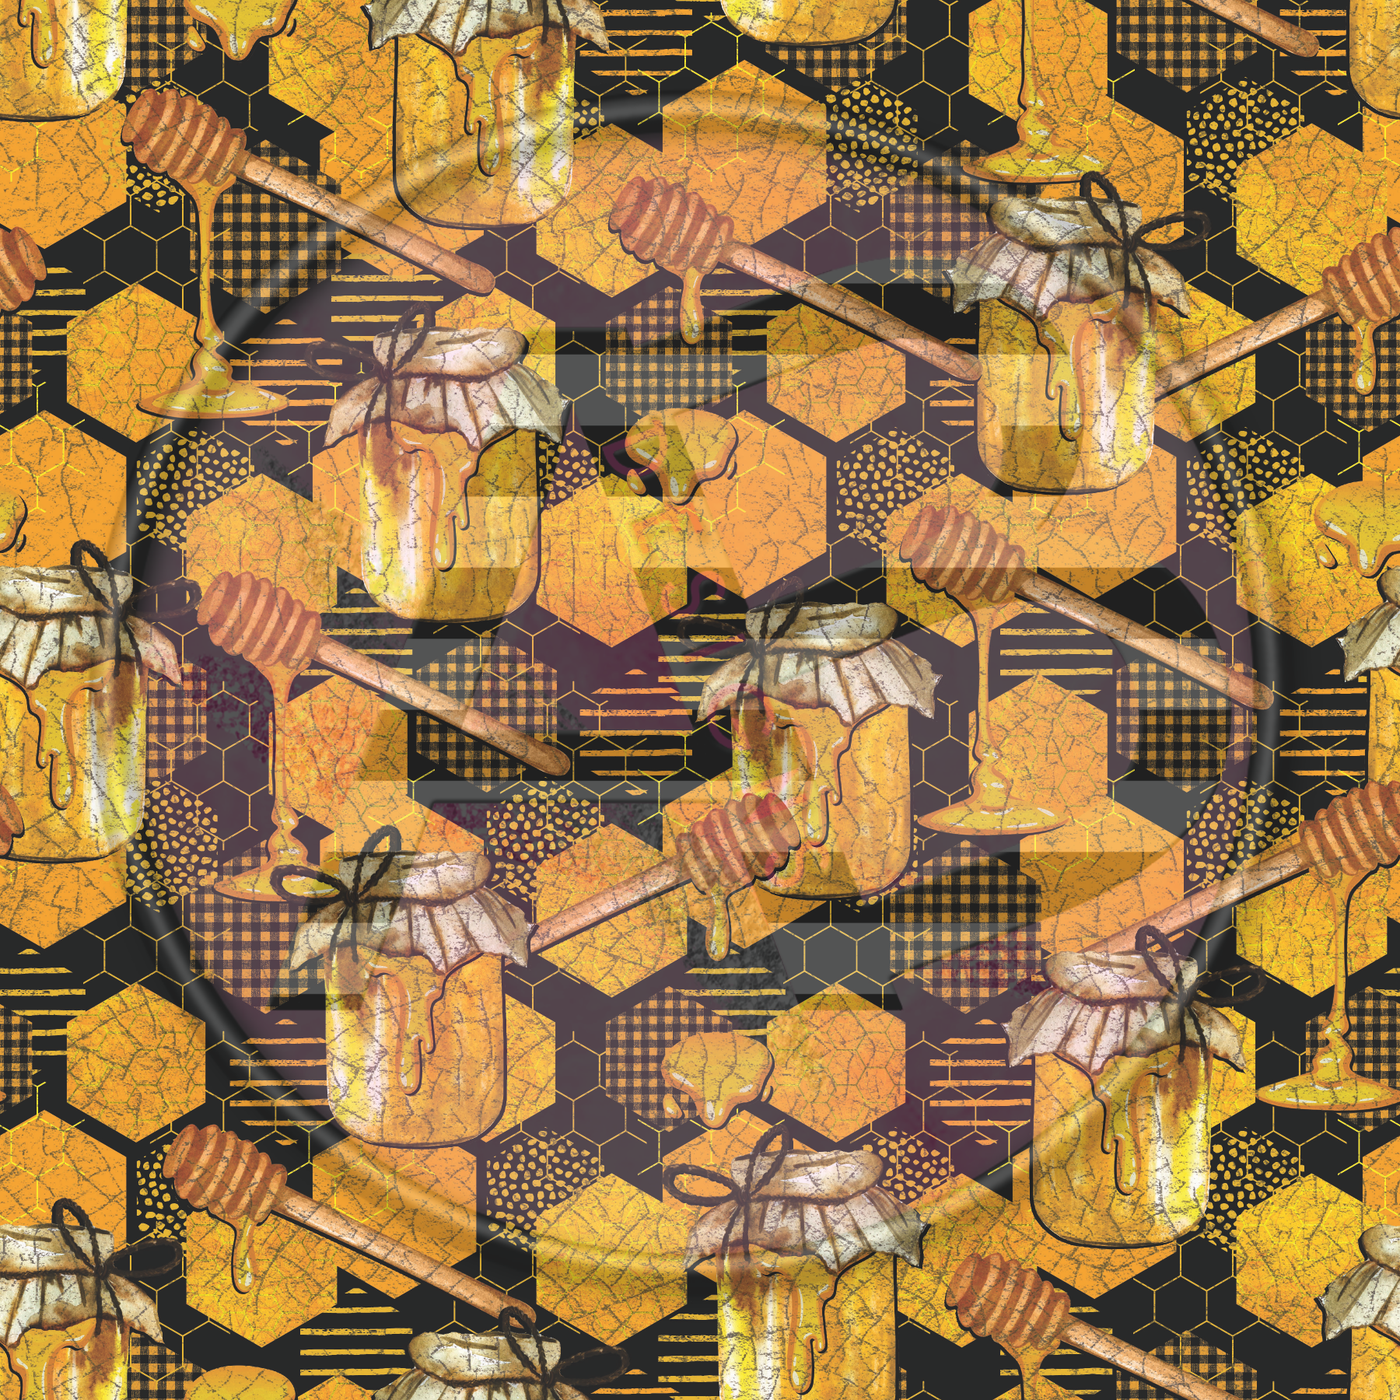 Adhesive Patterned Vinyl - Honey Bee 24